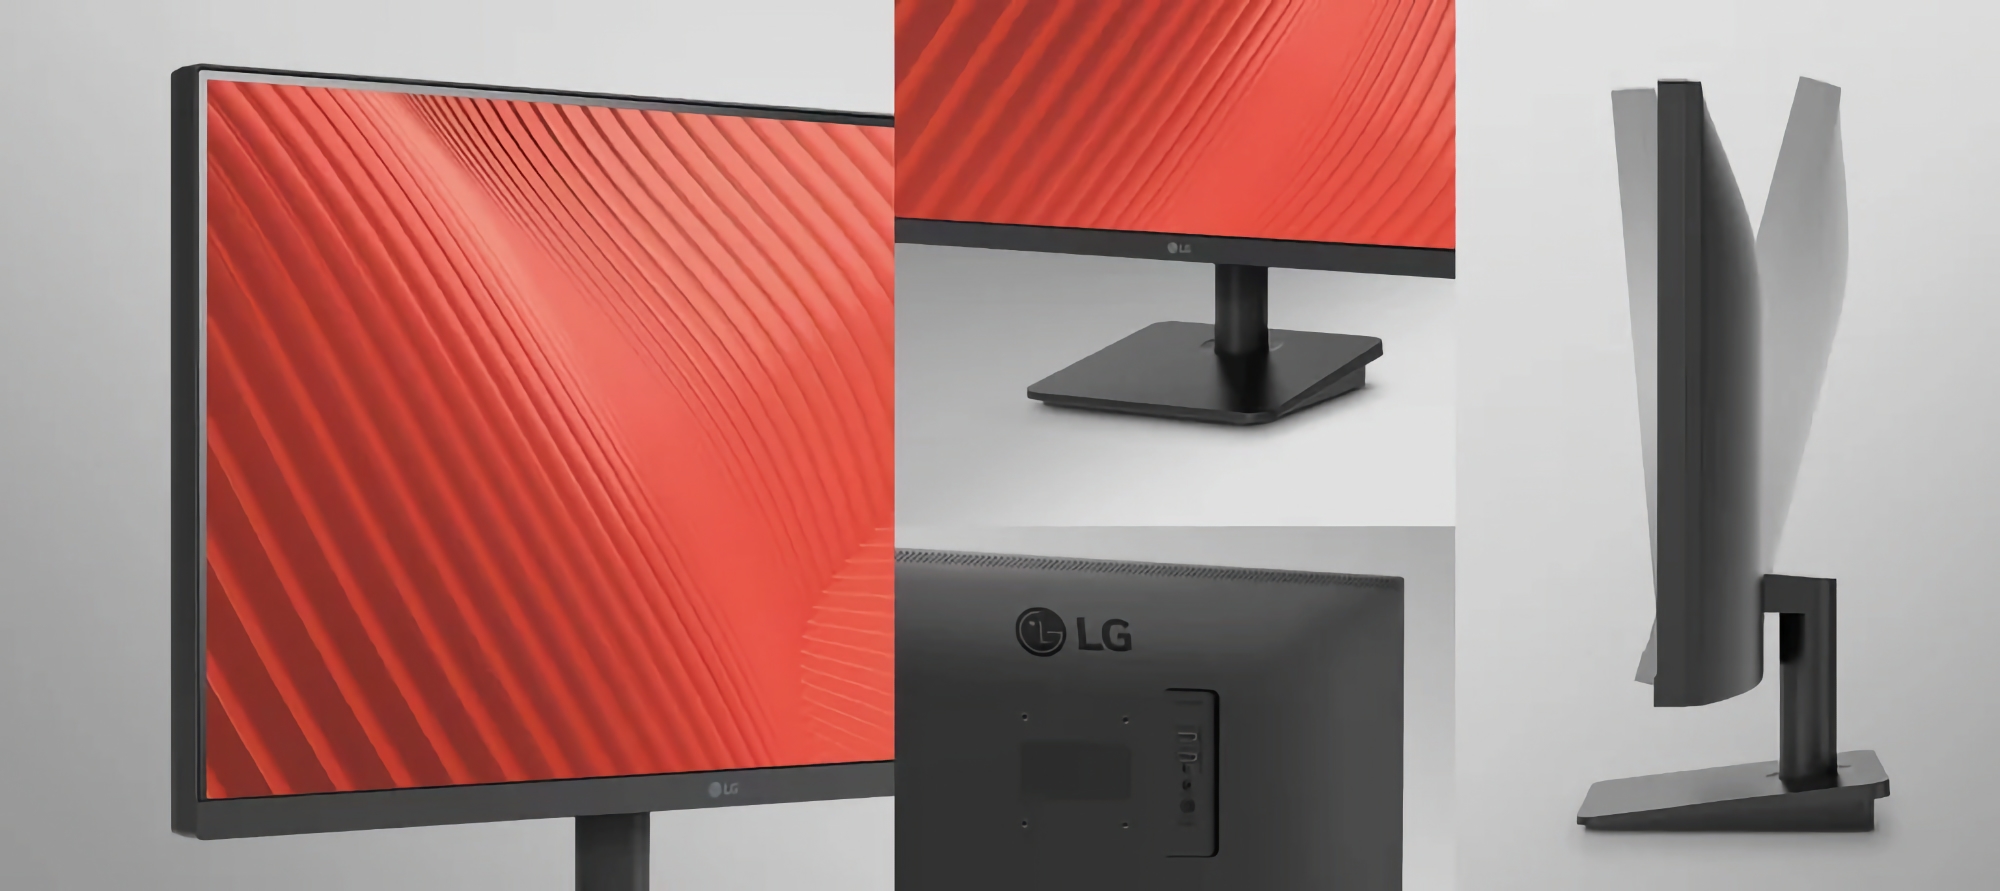 LG hat den 25MS500 vorgestellt: ein Monitor mit IPS-Matrix, 1080p-Auflösung und 100Hz-Unterstützung für $87